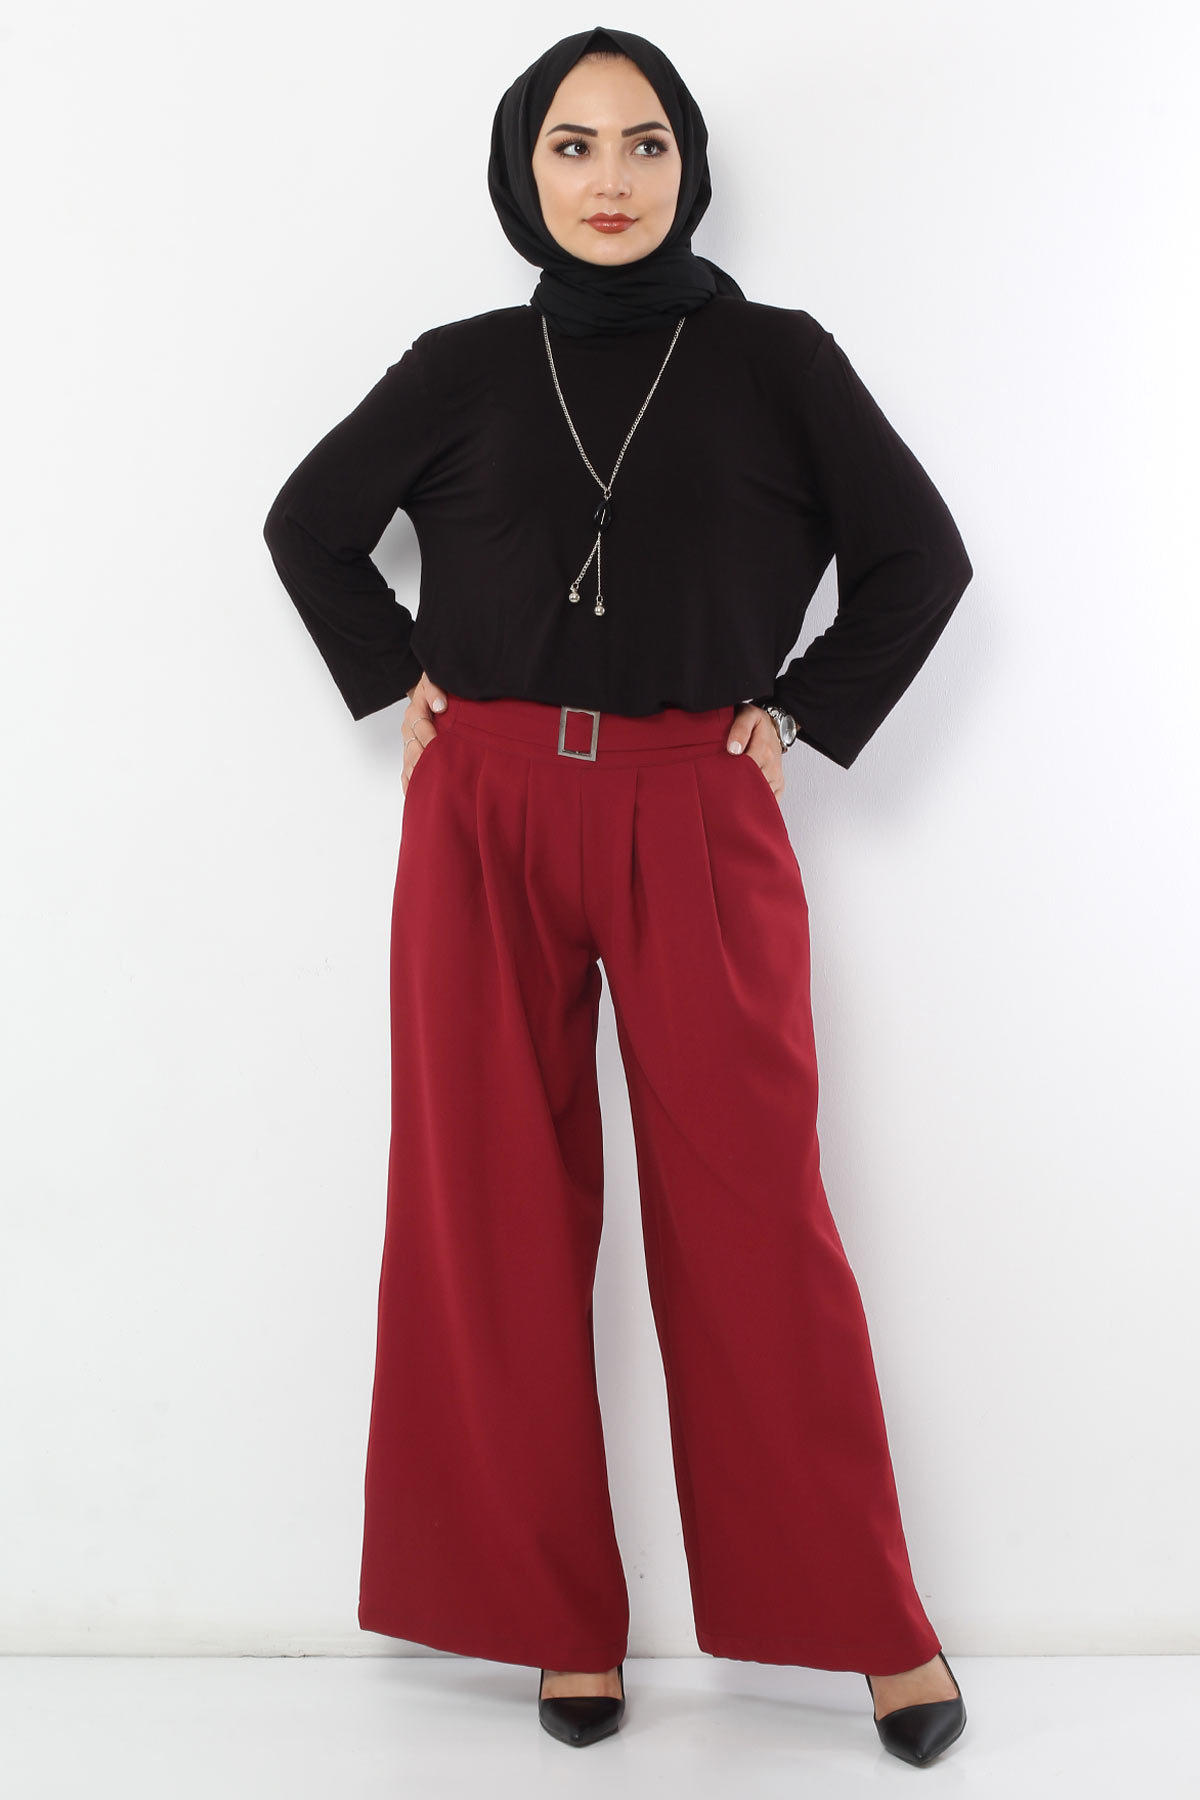 Tesettür Dünyası - Pleated Skirt Trousers TSD2789 Claret Red